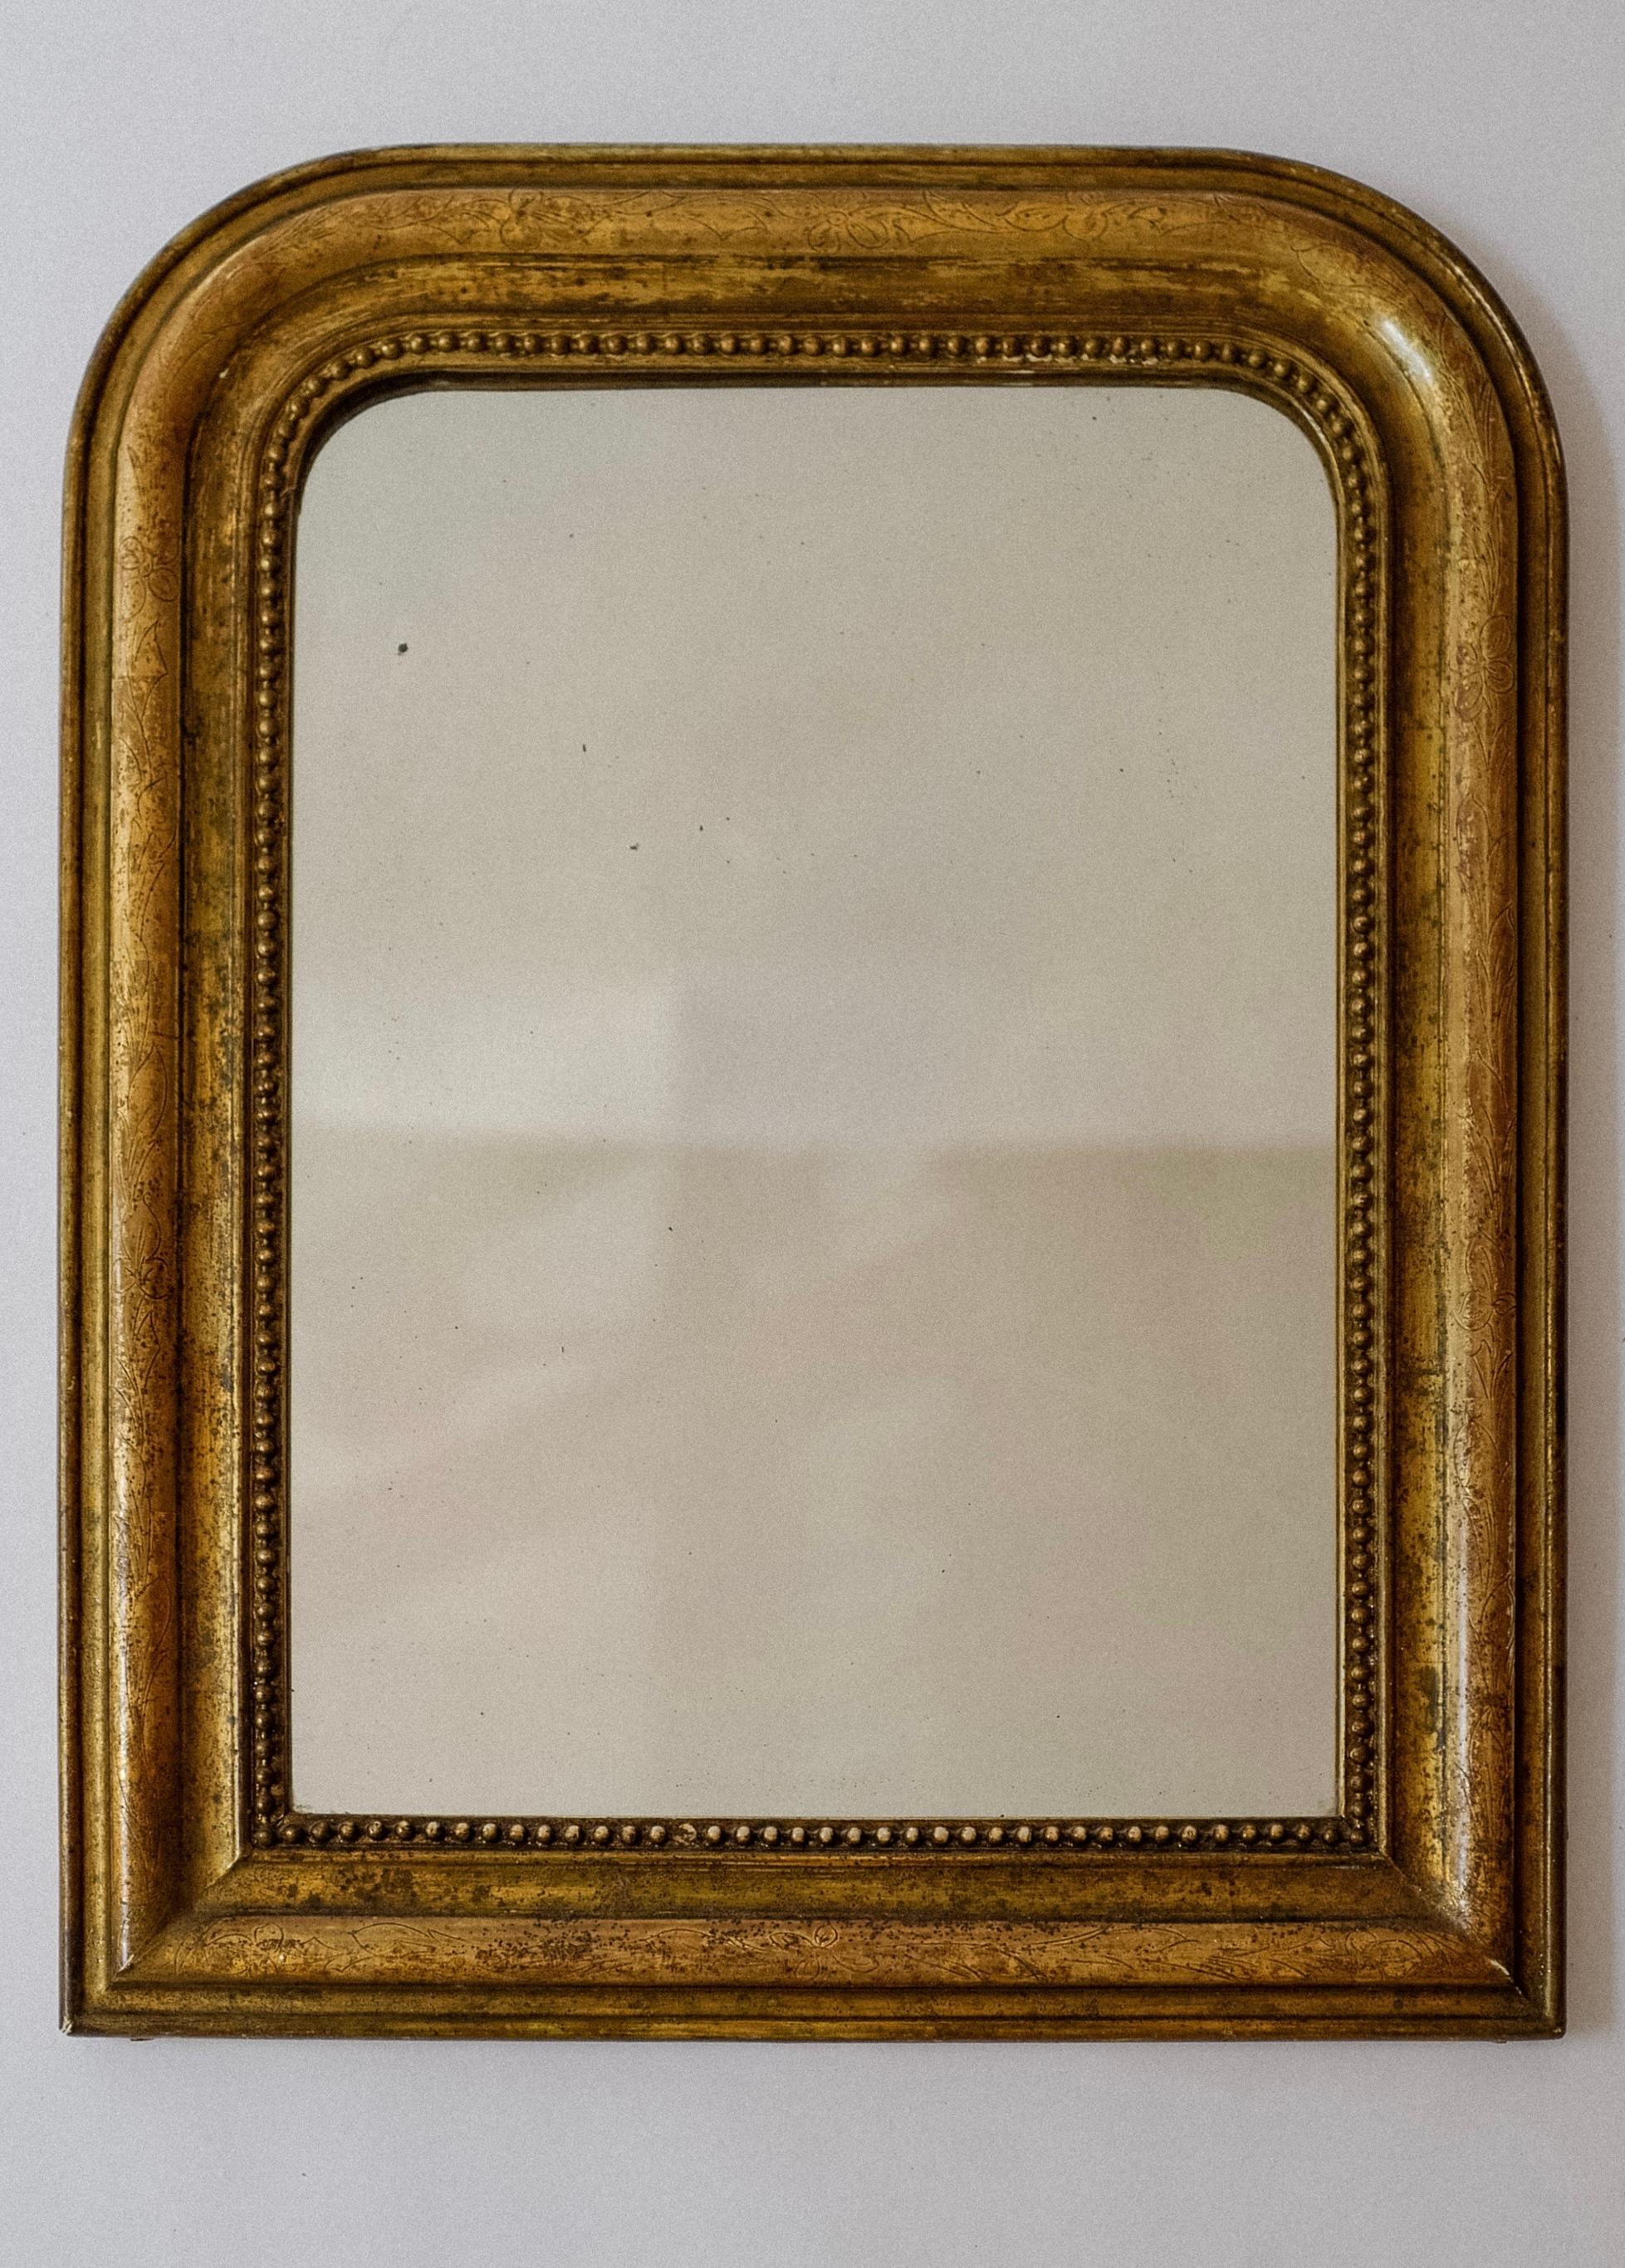 Miroir perlé en bois doré à la feuille d'or Louis Philippe, vers le XIXe siècle, France.